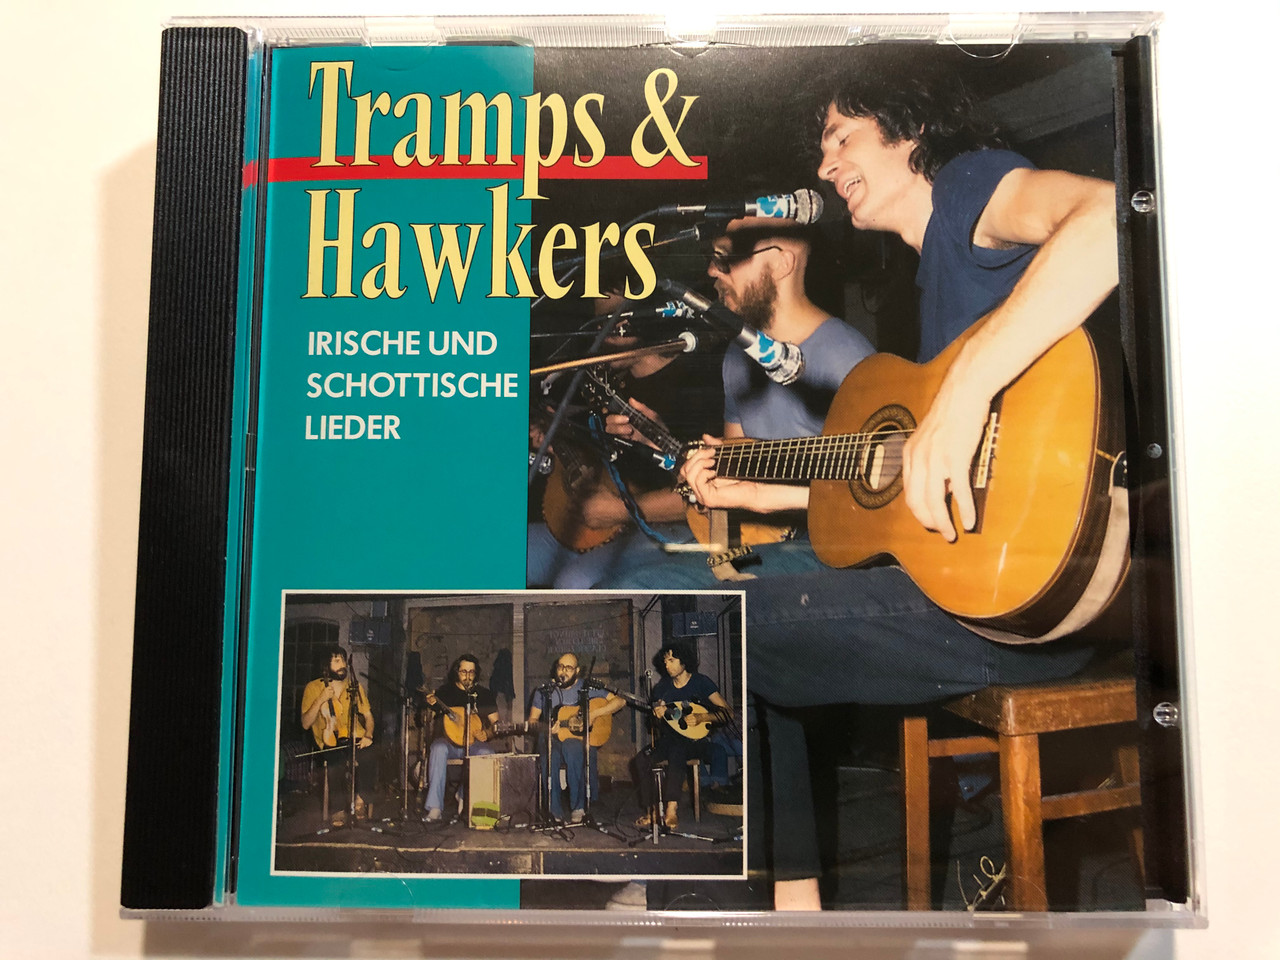 Tramps & Hawkers - Irische Und Schottische Lieder / Pastels Audio CD 1995 /  CD 20.1631 - bibleinmylanguage